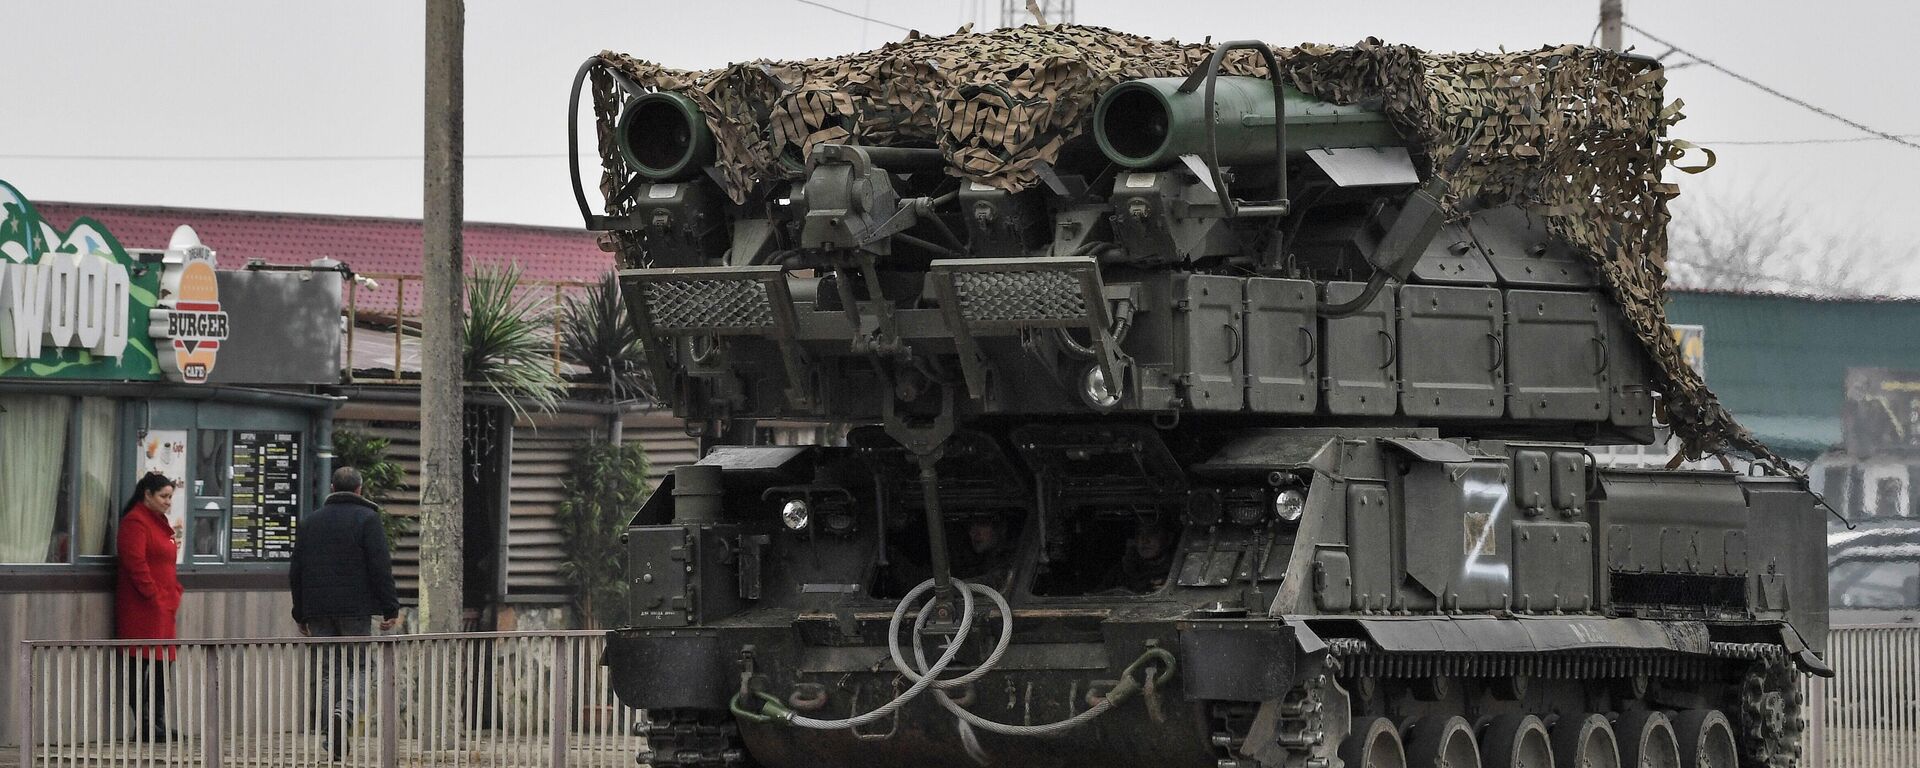 Sistemas de defesa antiaérea Buk das Forças Armadas da Rússia em Armyansk, Crimeia, 25 de fevereiro de 2022 - Sputnik Brasil, 1920, 25.02.2022